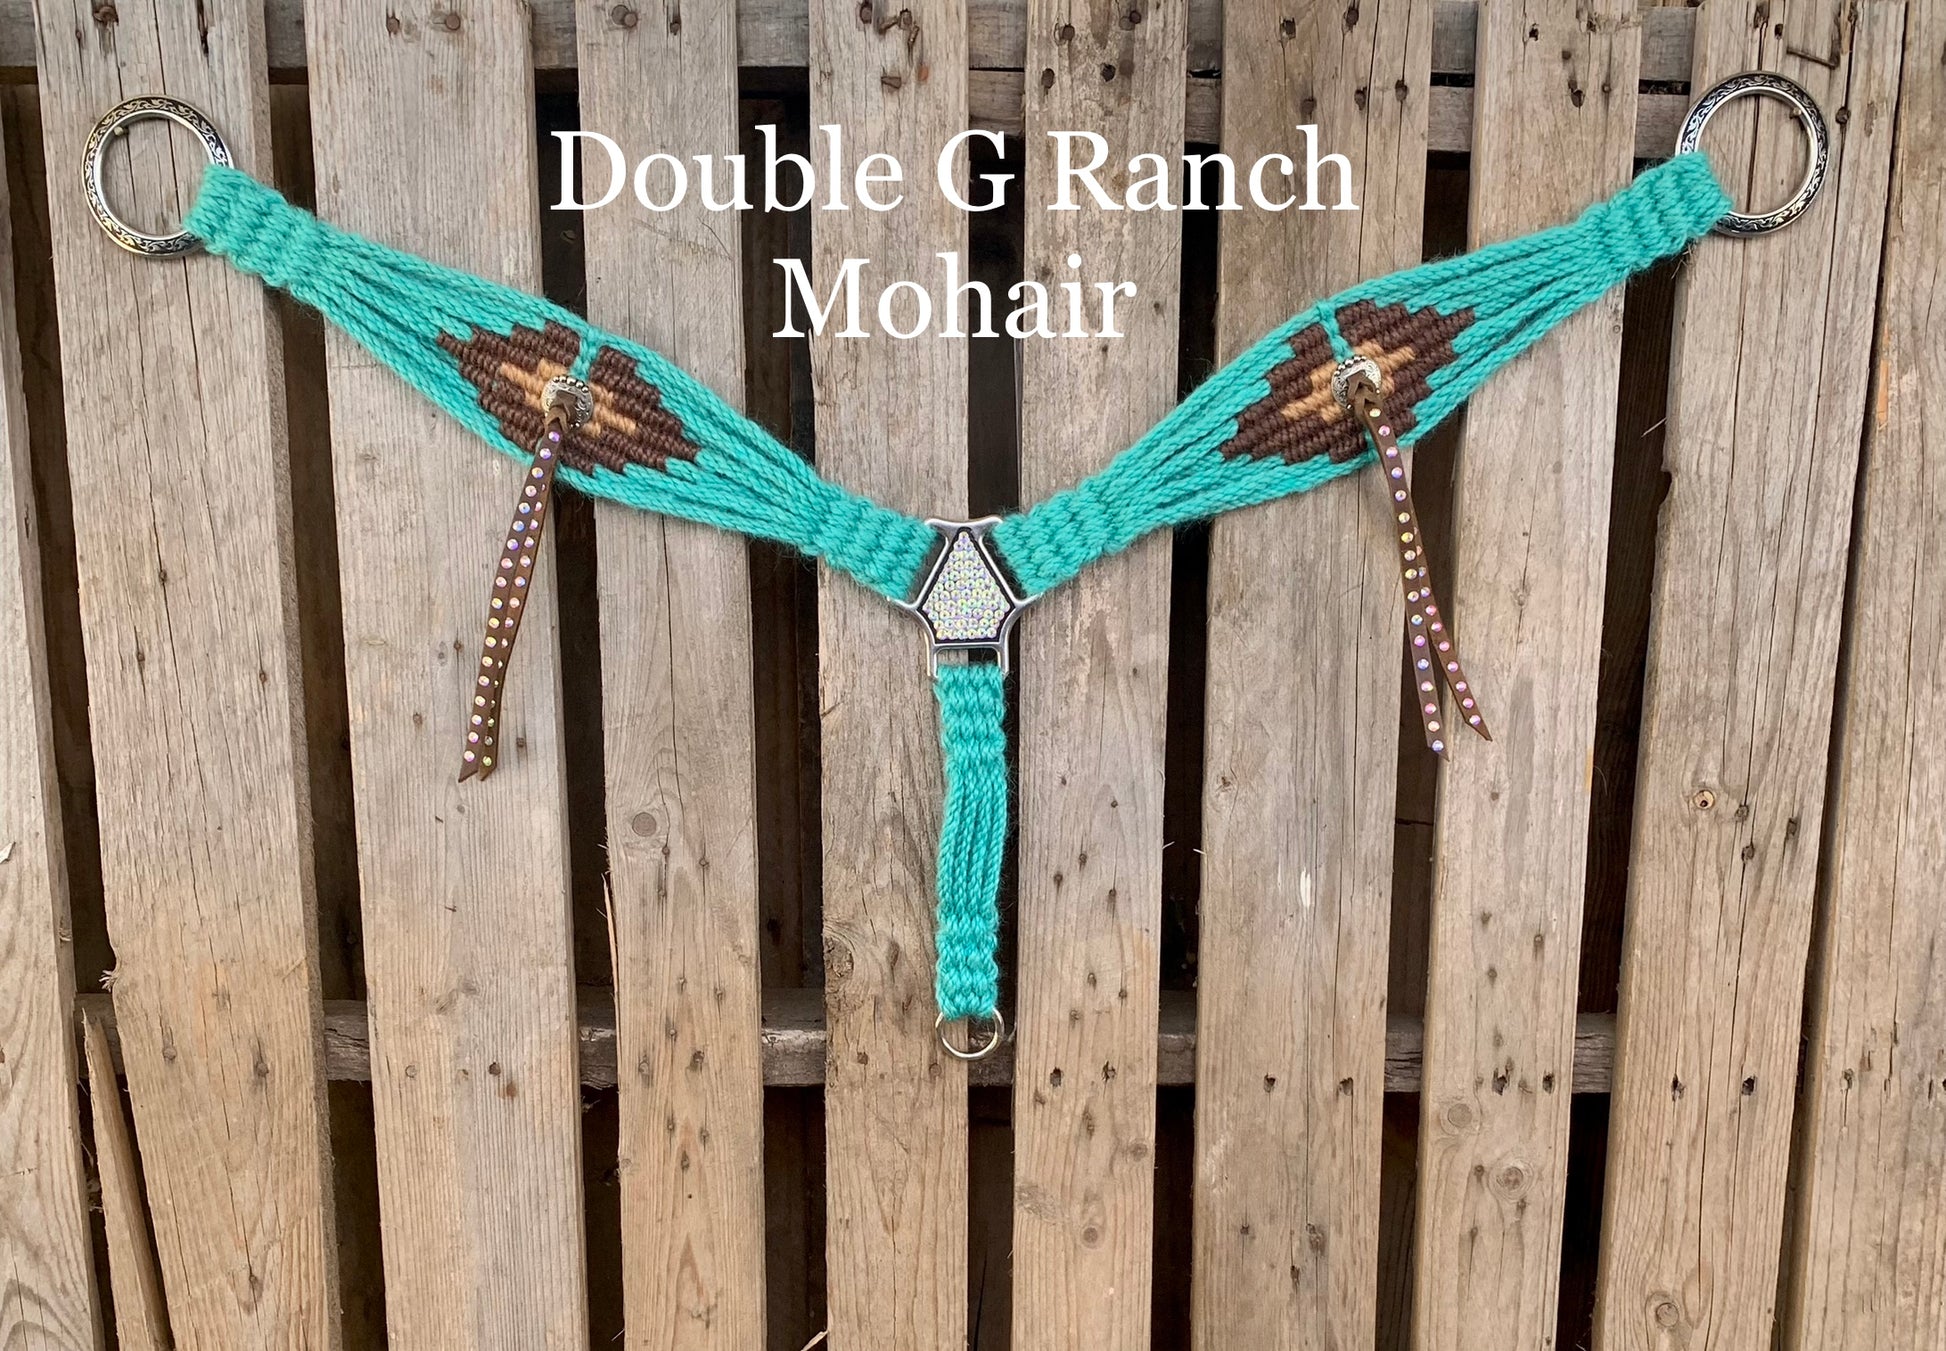 Double G Ranch Mohair